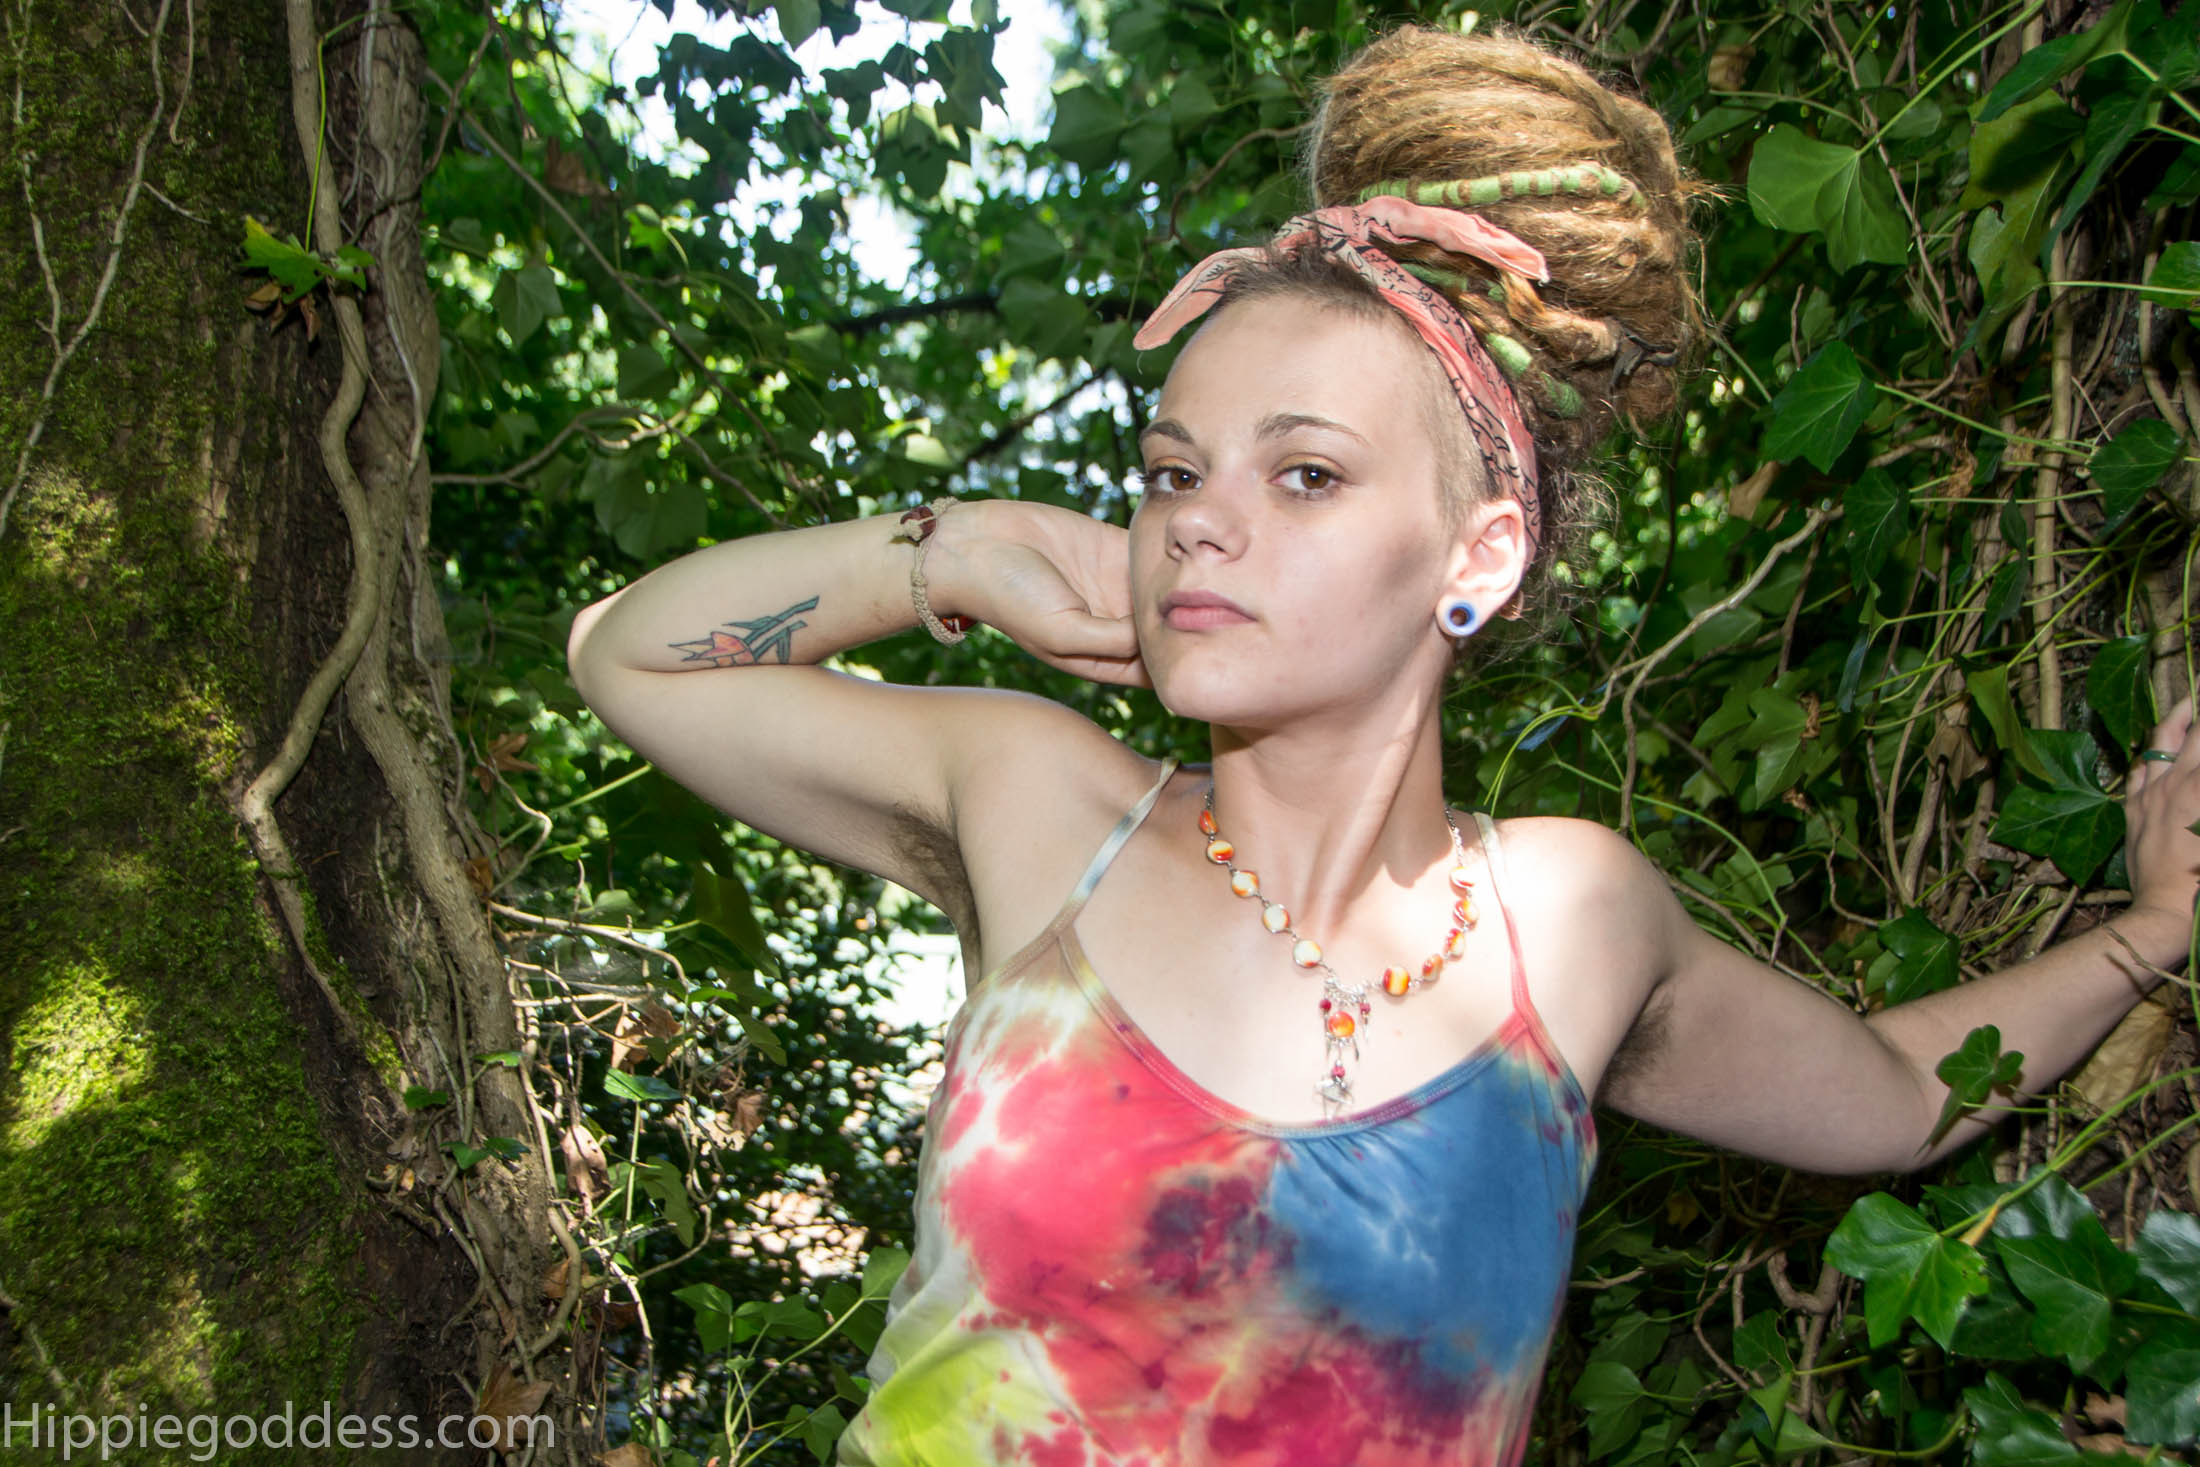 People 2200x1467 hairy armpits dreadlocks hippie  women model women outdoors